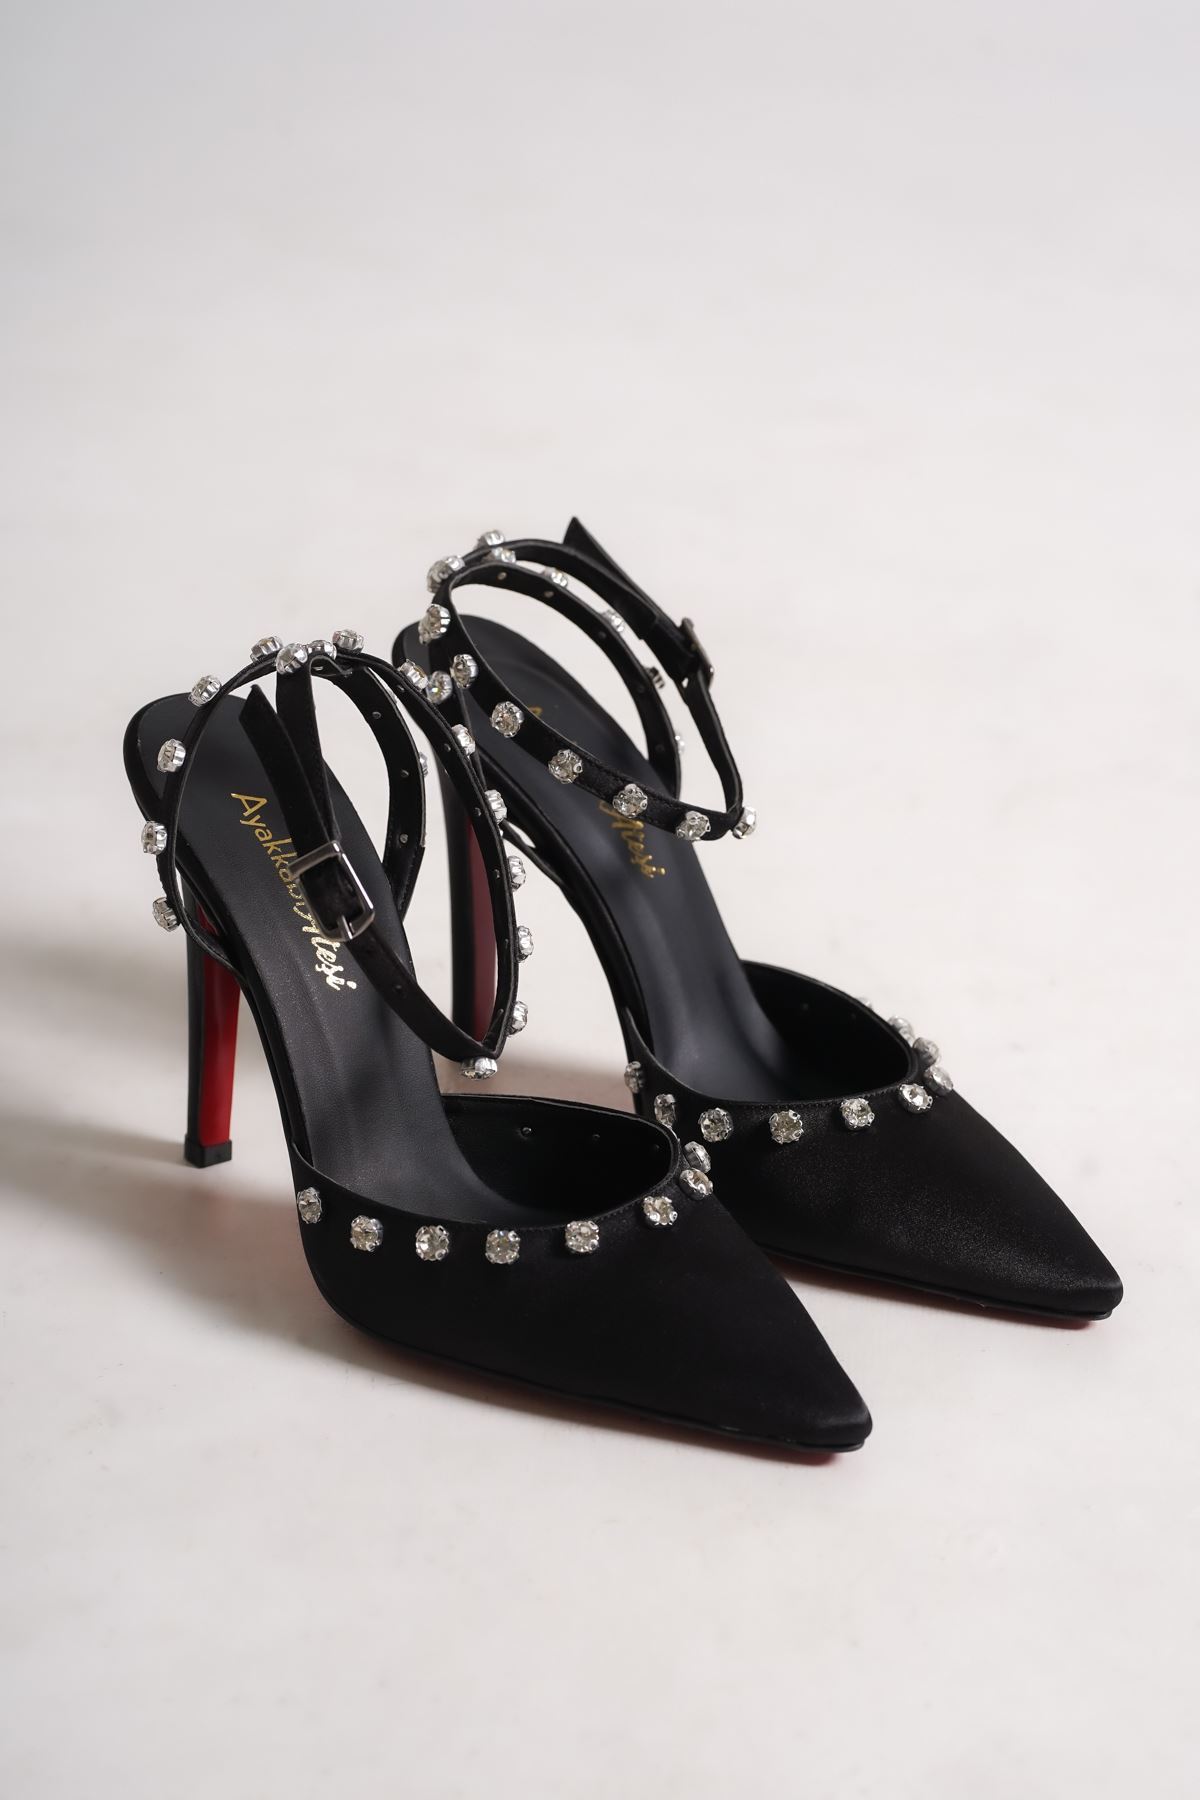 Siyah Saten  Taşlı Özel Tasarım Kadın İnce Topuklu Ayakkabı Stiletto Linda